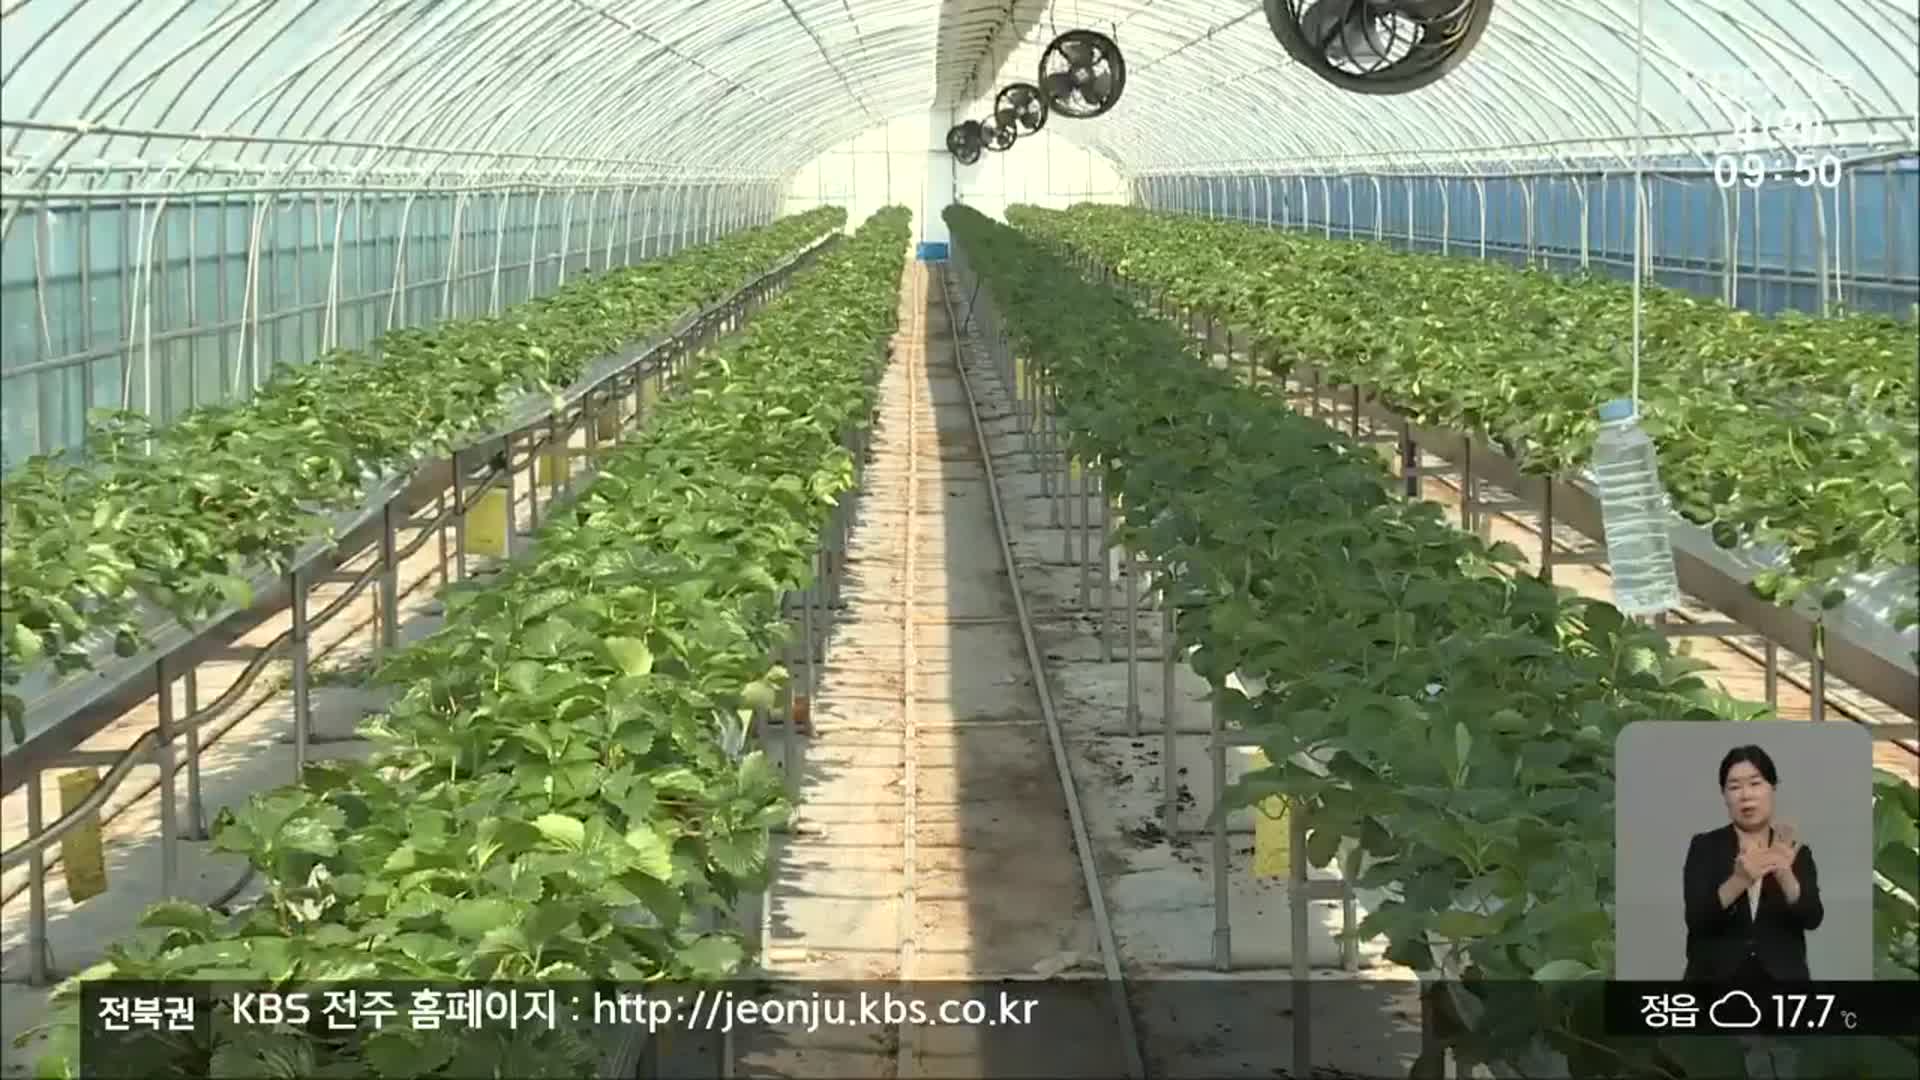 [전북의 창] 고품질 딸기 키우려면?